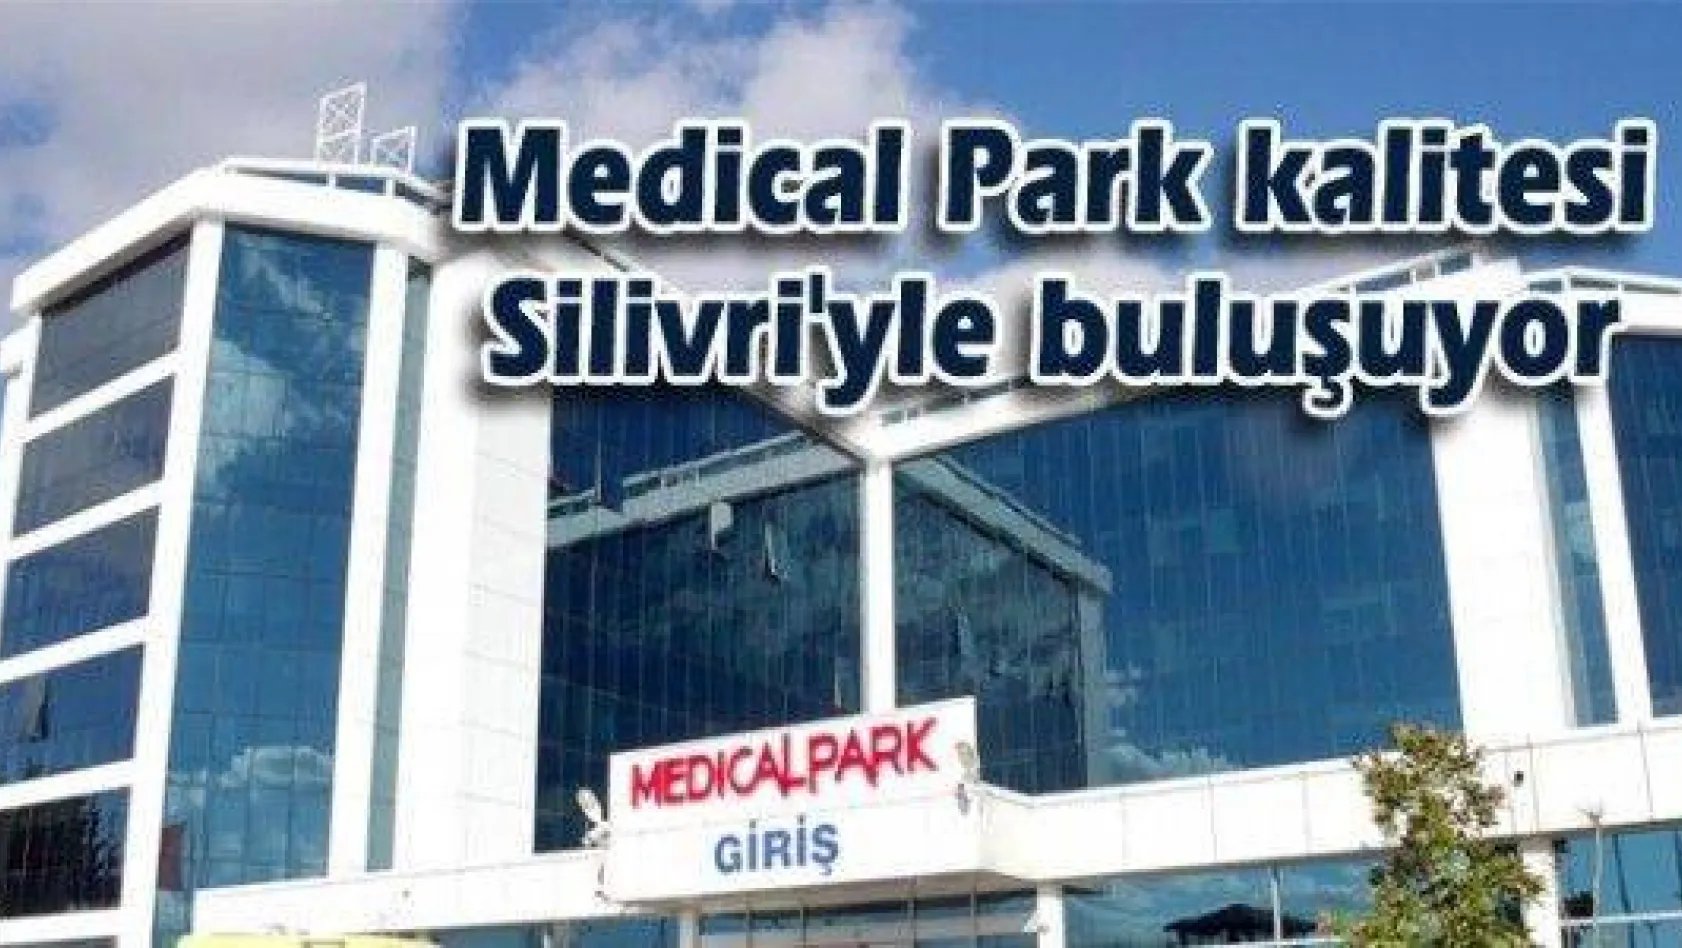 Medical Park kalitesi Silivri'yle buluşuyor